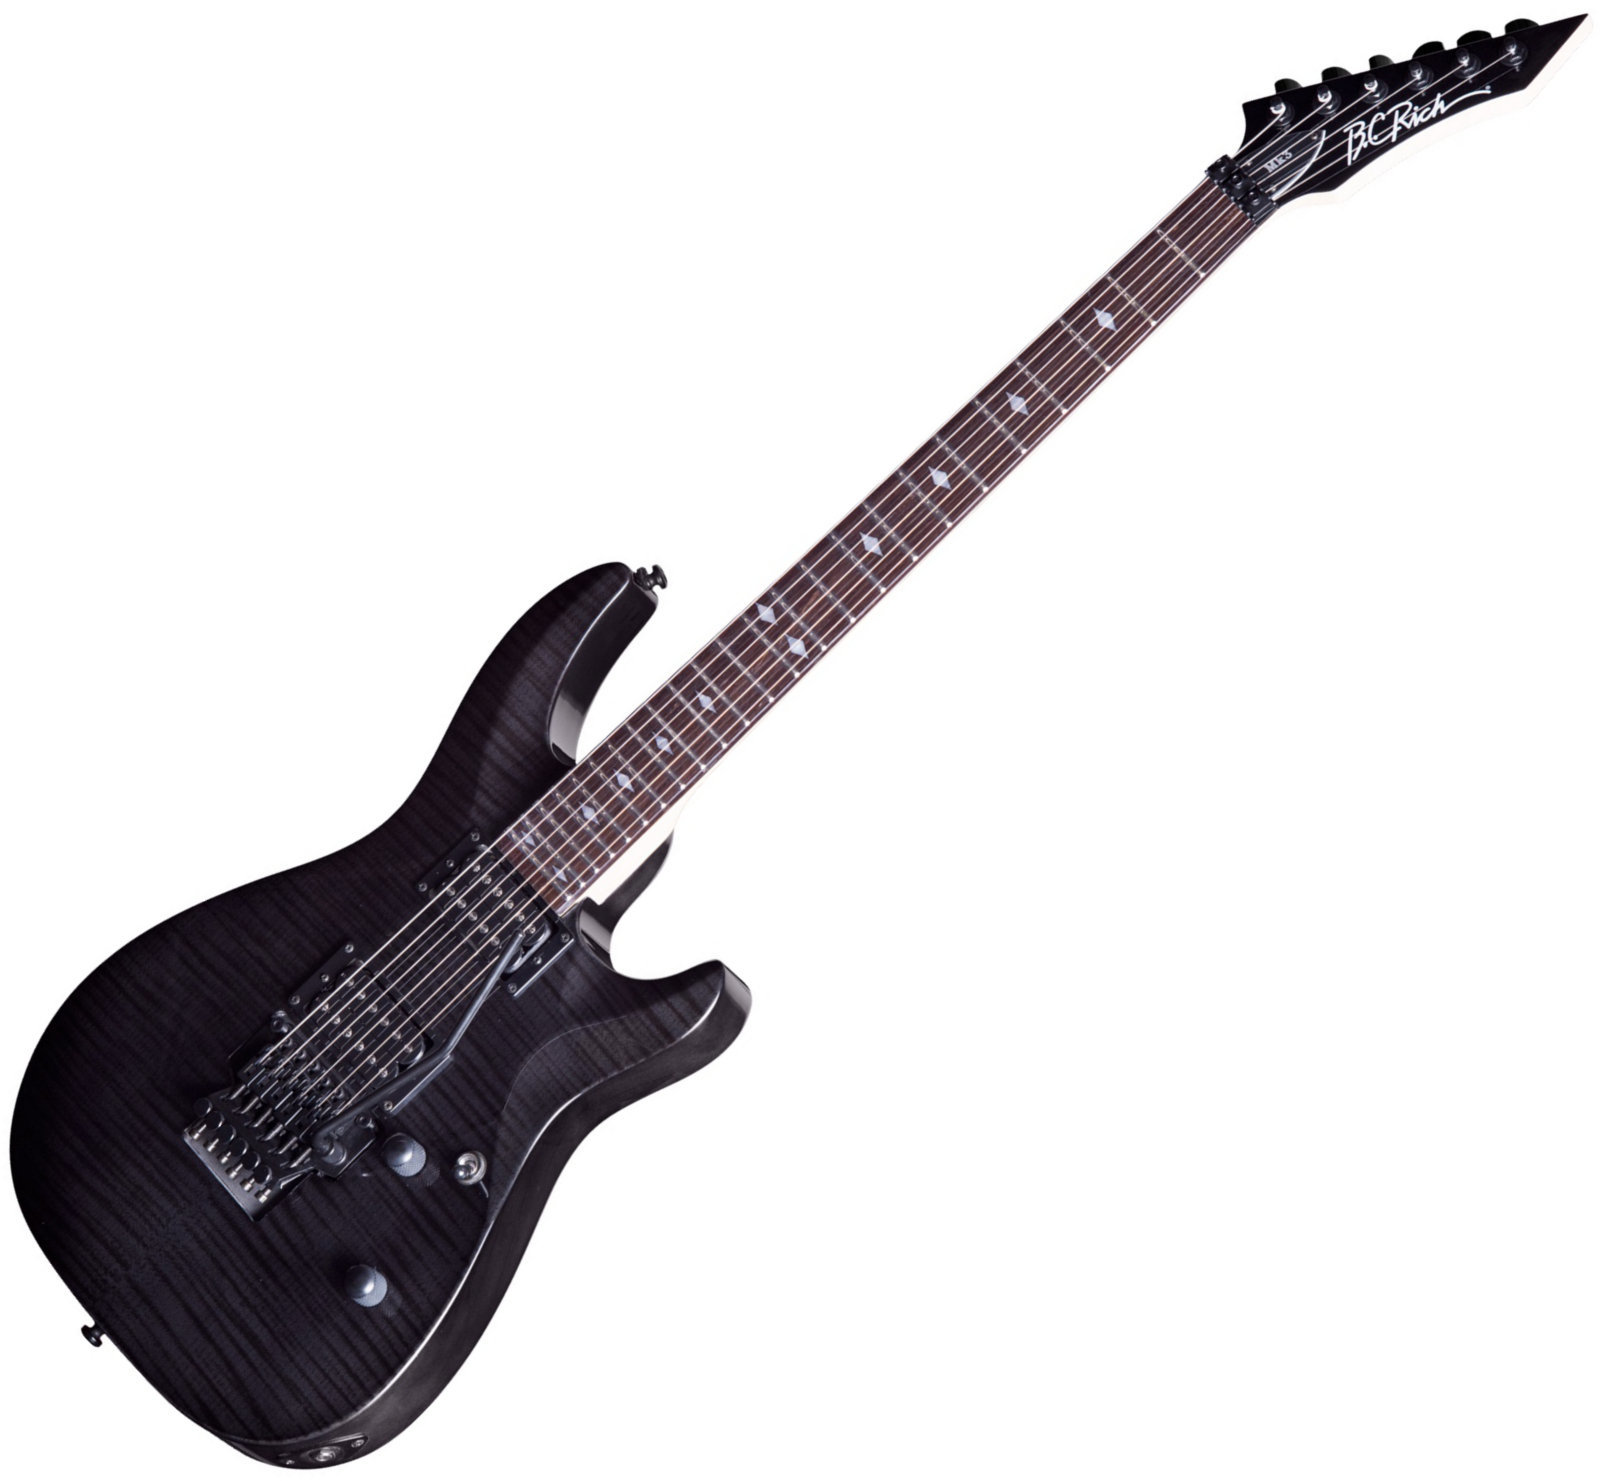 Elektrische gitaar BC RICH MK3 Villain Transparent Black